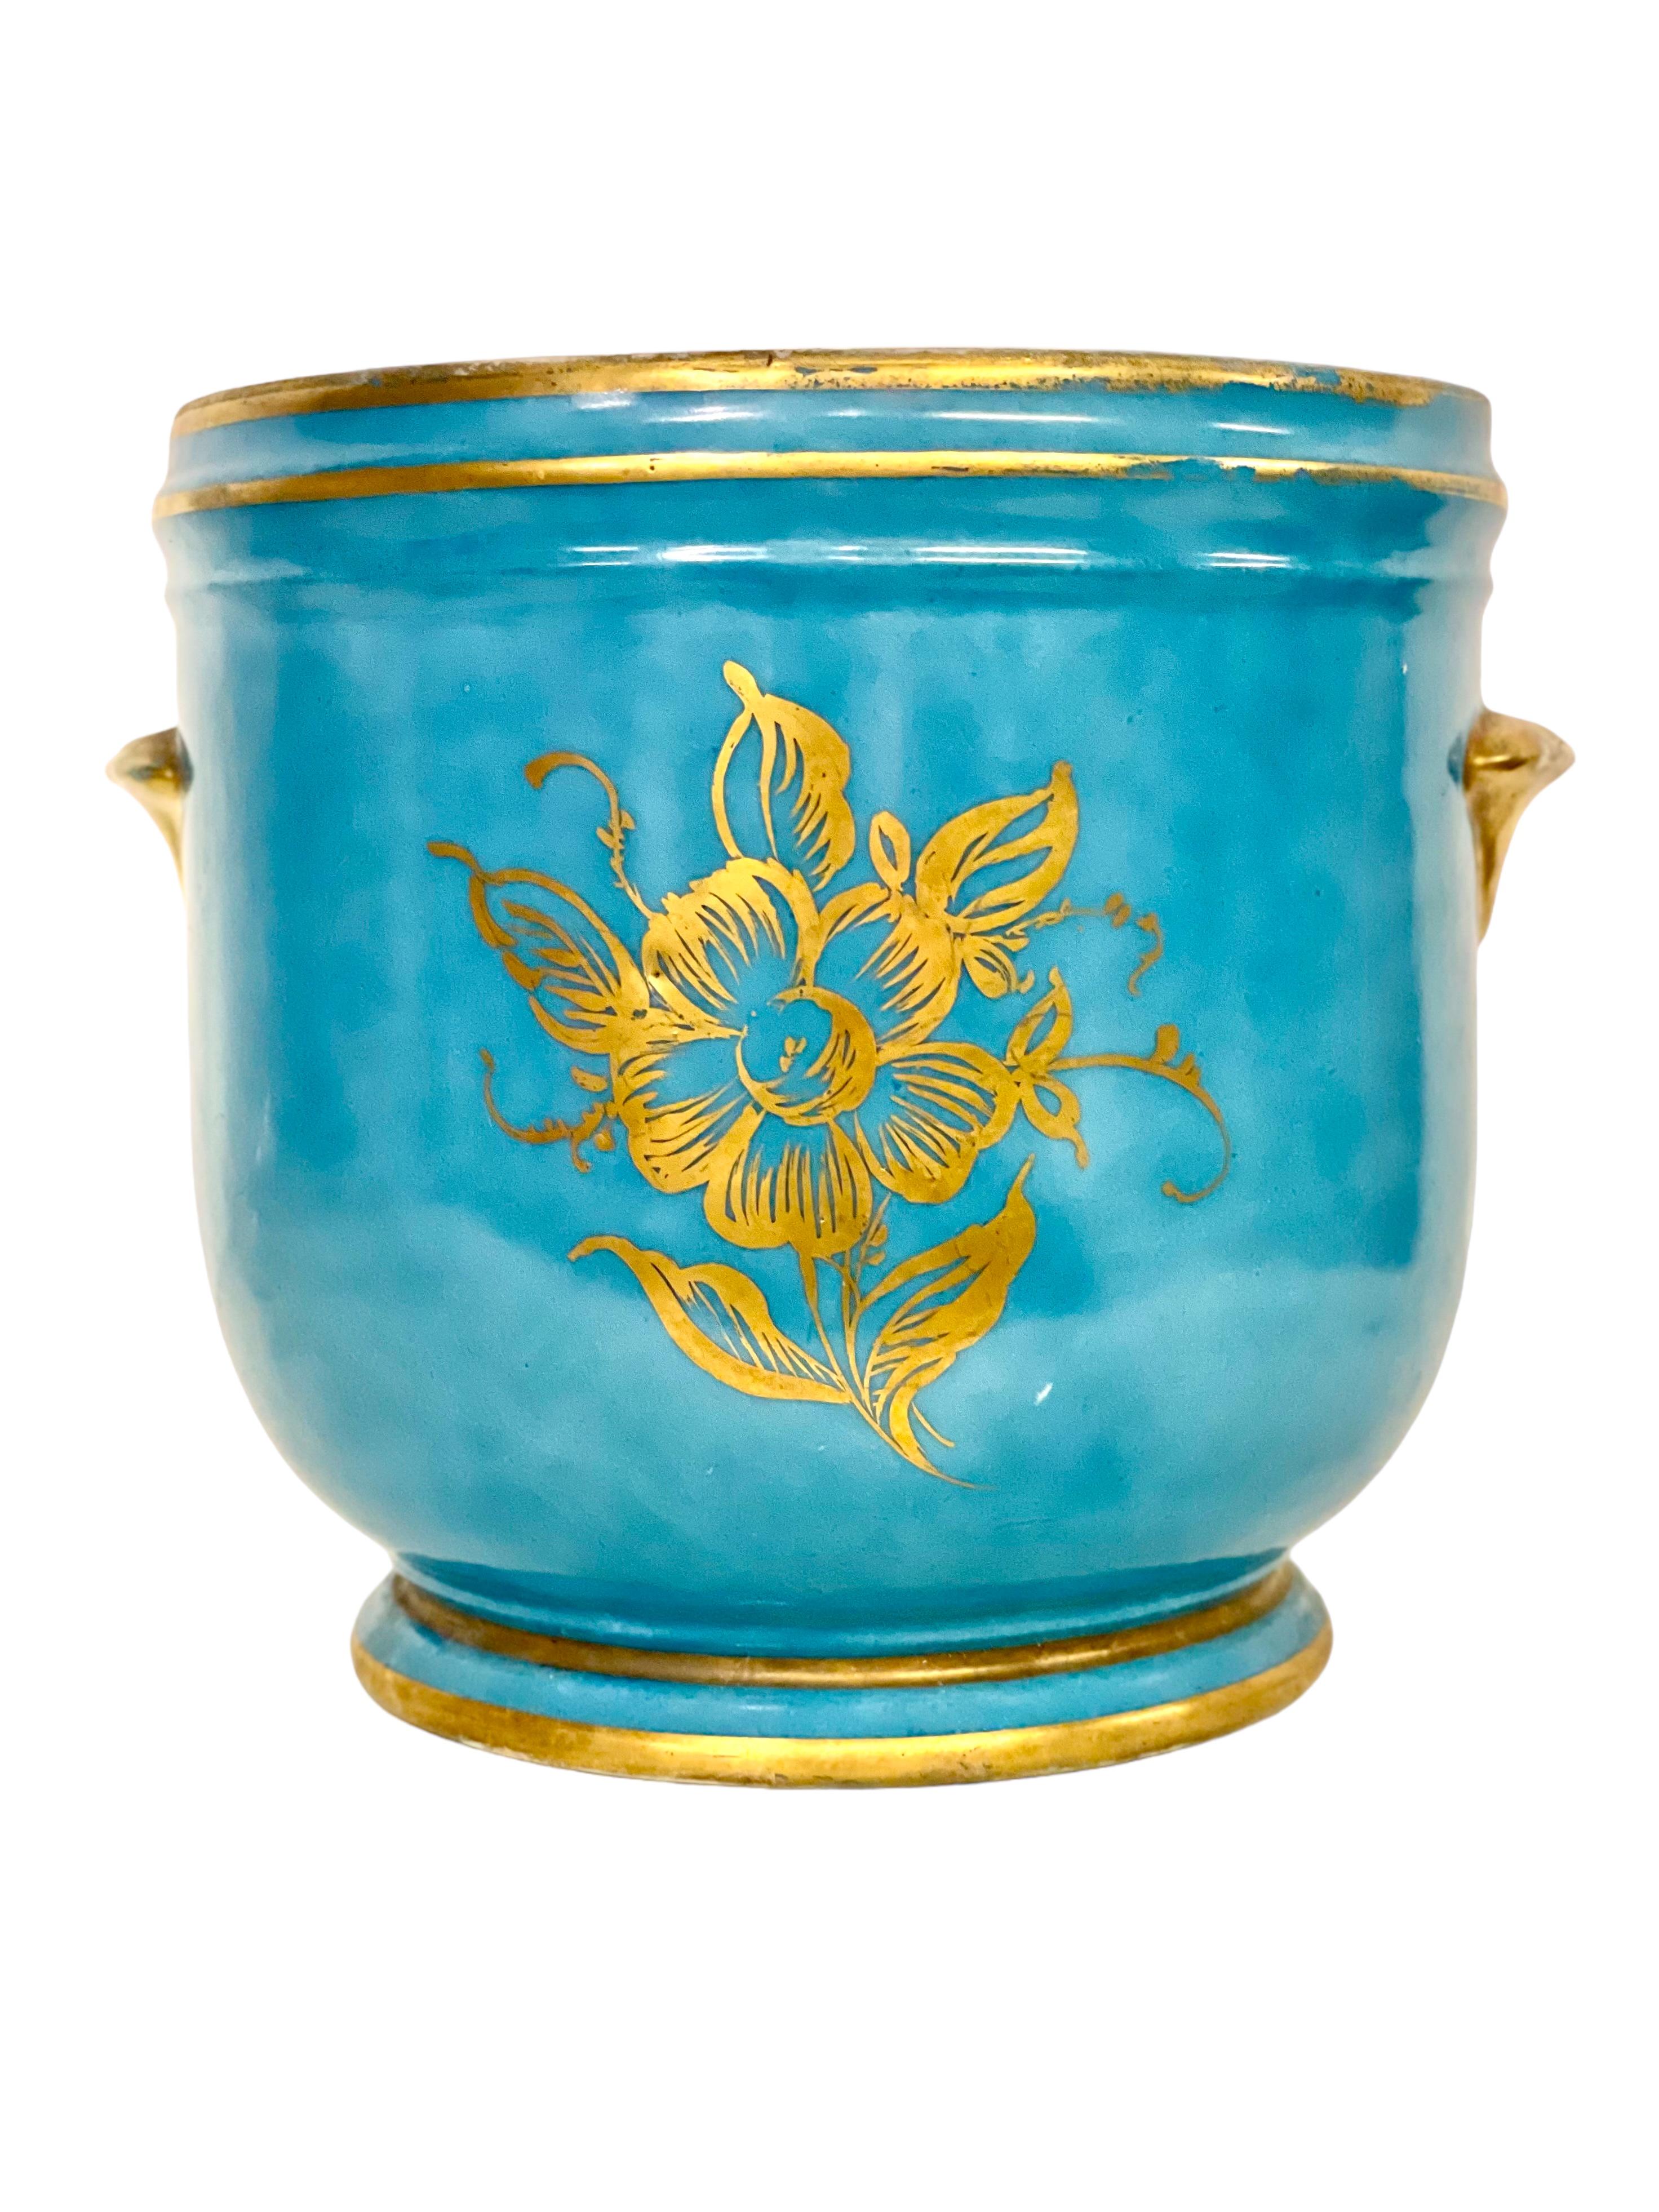 Magnifique cache-pot ou jardinière du XIXe siècle aux couleurs vives, fabriqué avec amour en porcelaine de Limoges dans le style de Sèvres du XVIIIe siècle. Cette charmante jardinière est dotée de deux poignées latérales et est émaillée d'un bleu